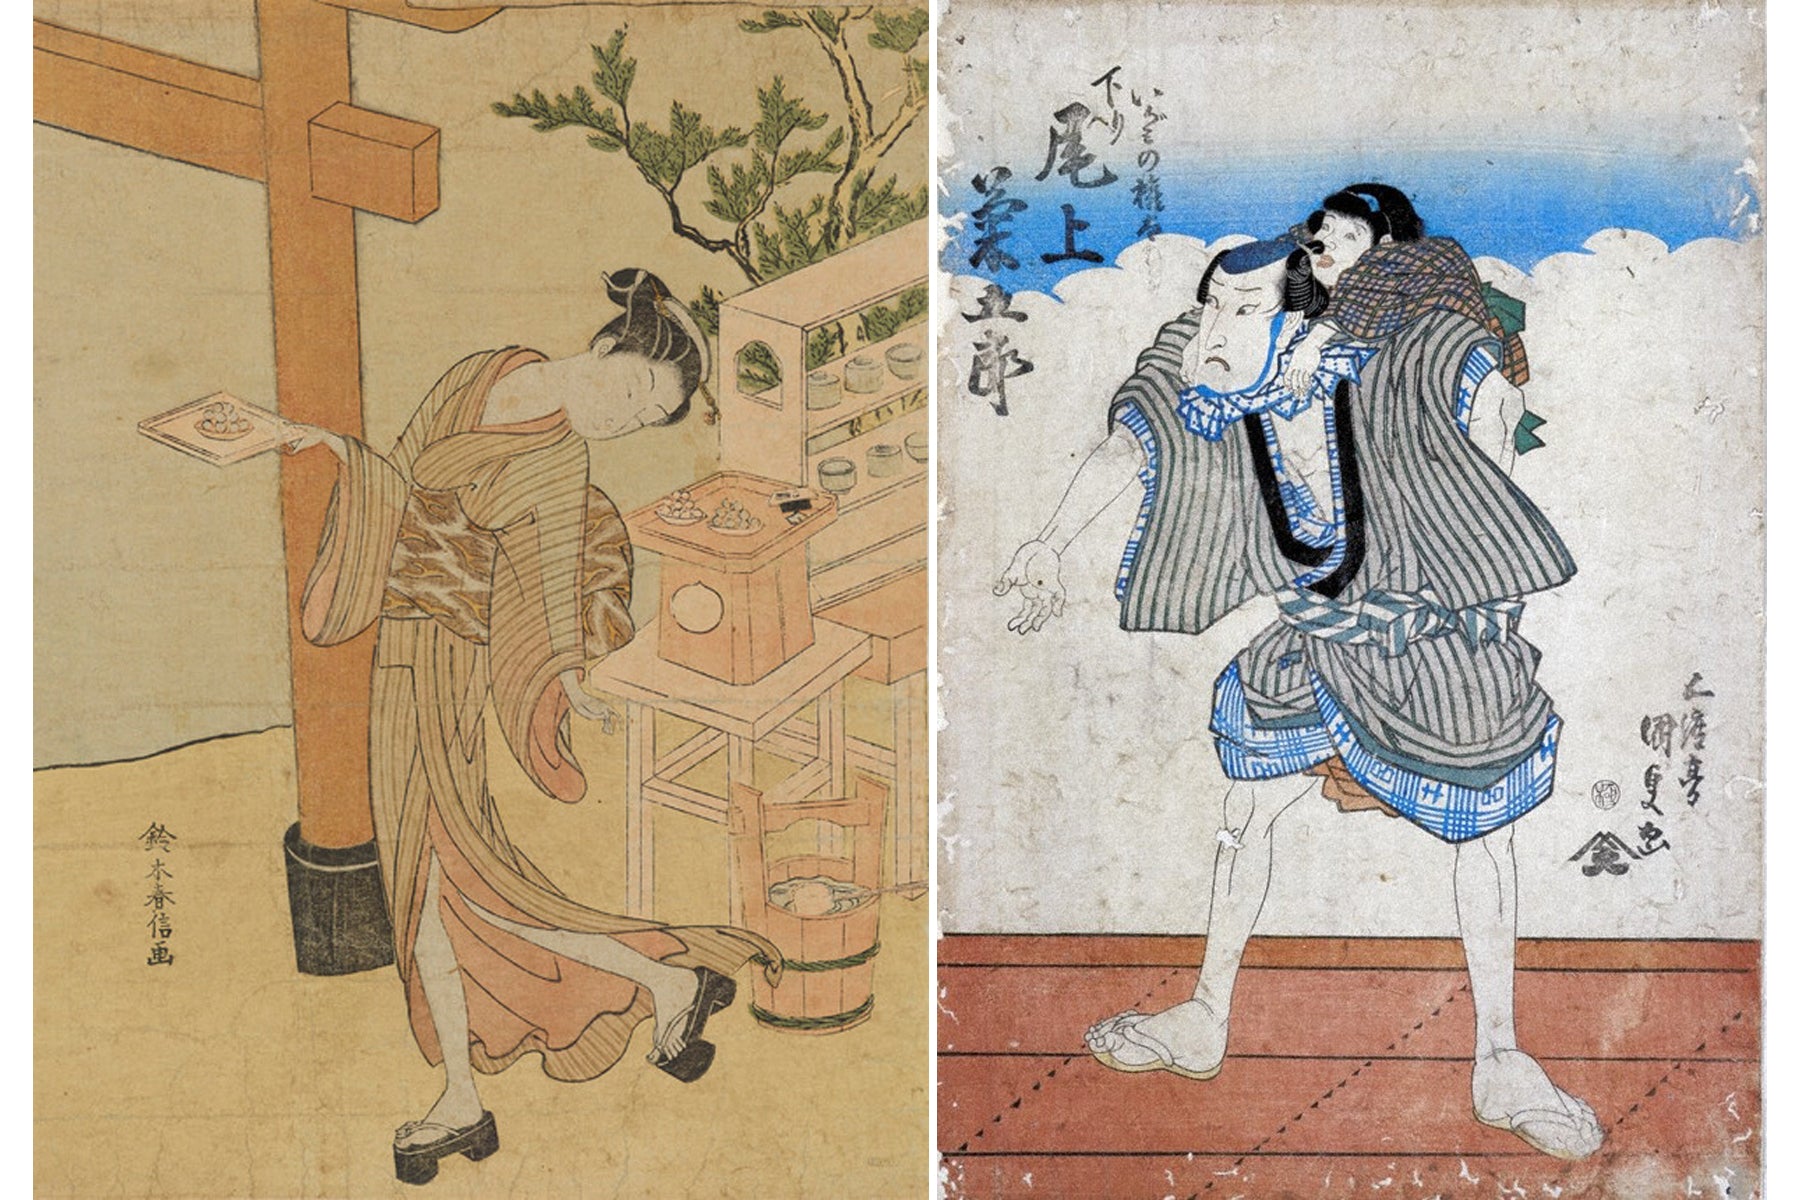 縞模様は江戸時代に大ブーム しかし 西洋では悪魔の柄だった ファッショントレンド